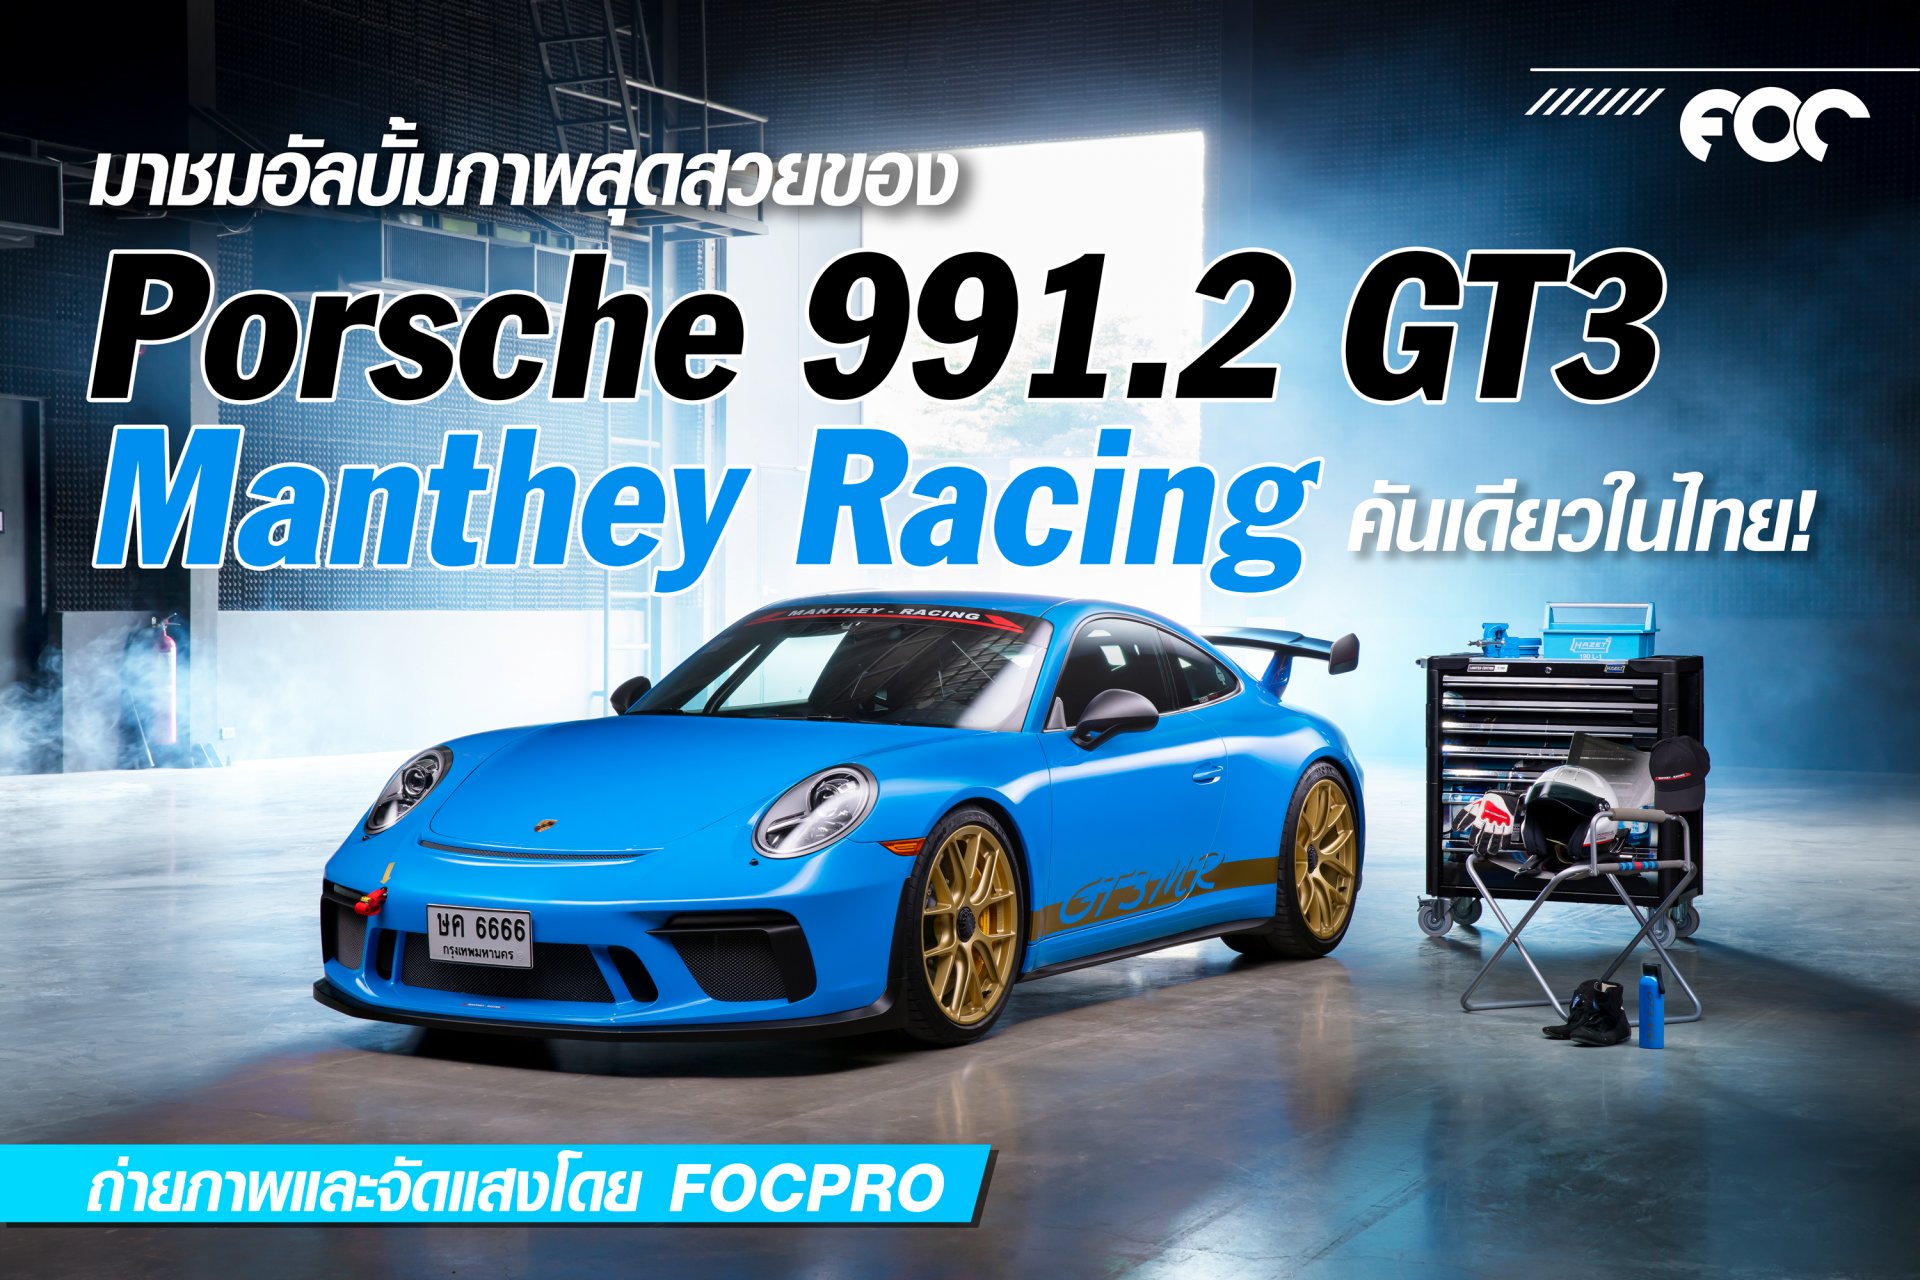 อัลบั้มภาพสุด Exclusive ของ Porsche 991.2 GT3 Manthey Racing คันเดียวในเมืองไทย!